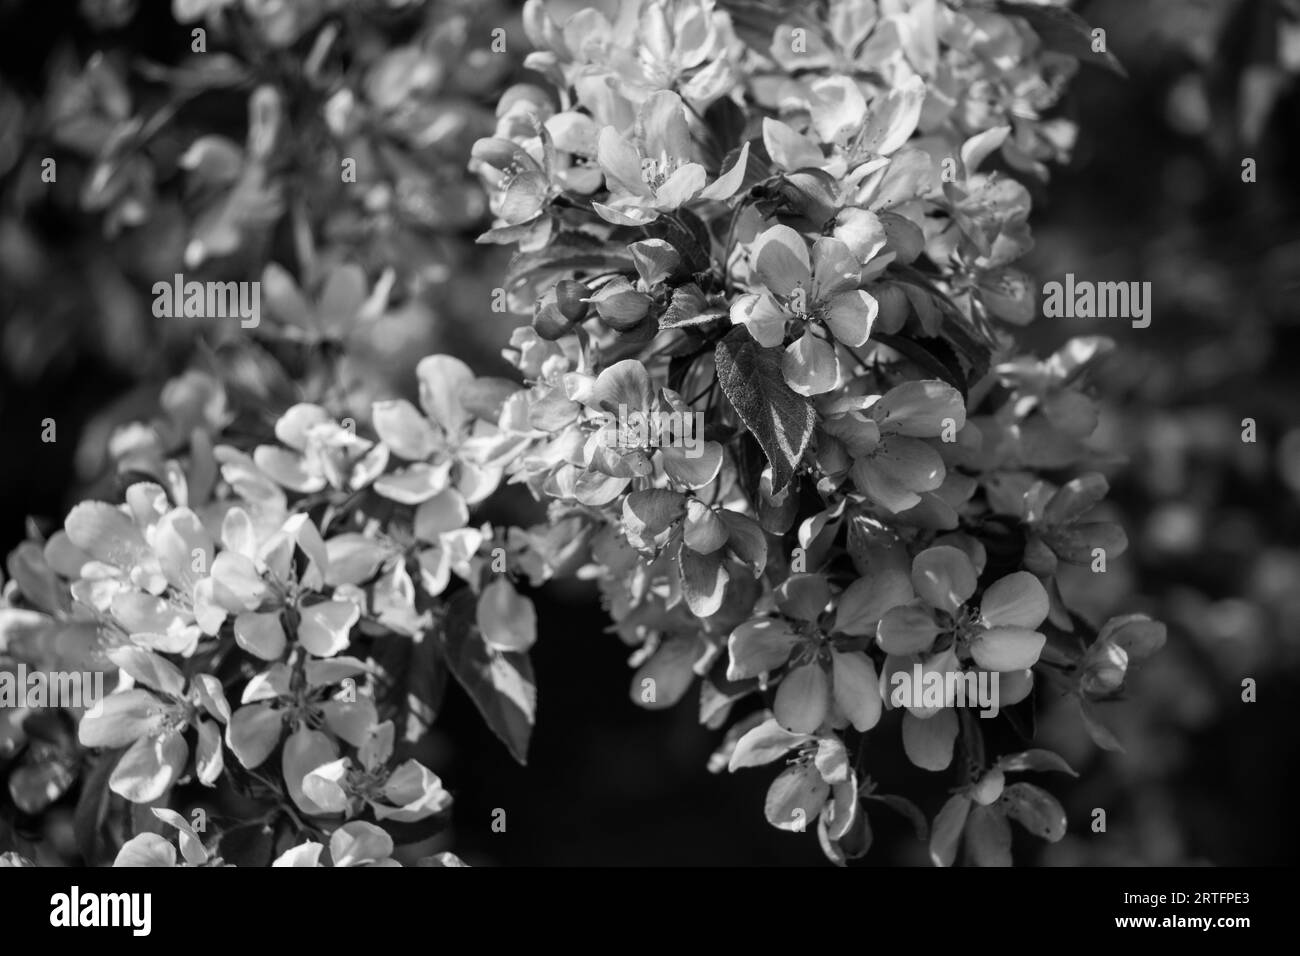 Un gros plan de fleurs de pommier en niveaux de gris Banque D'Images